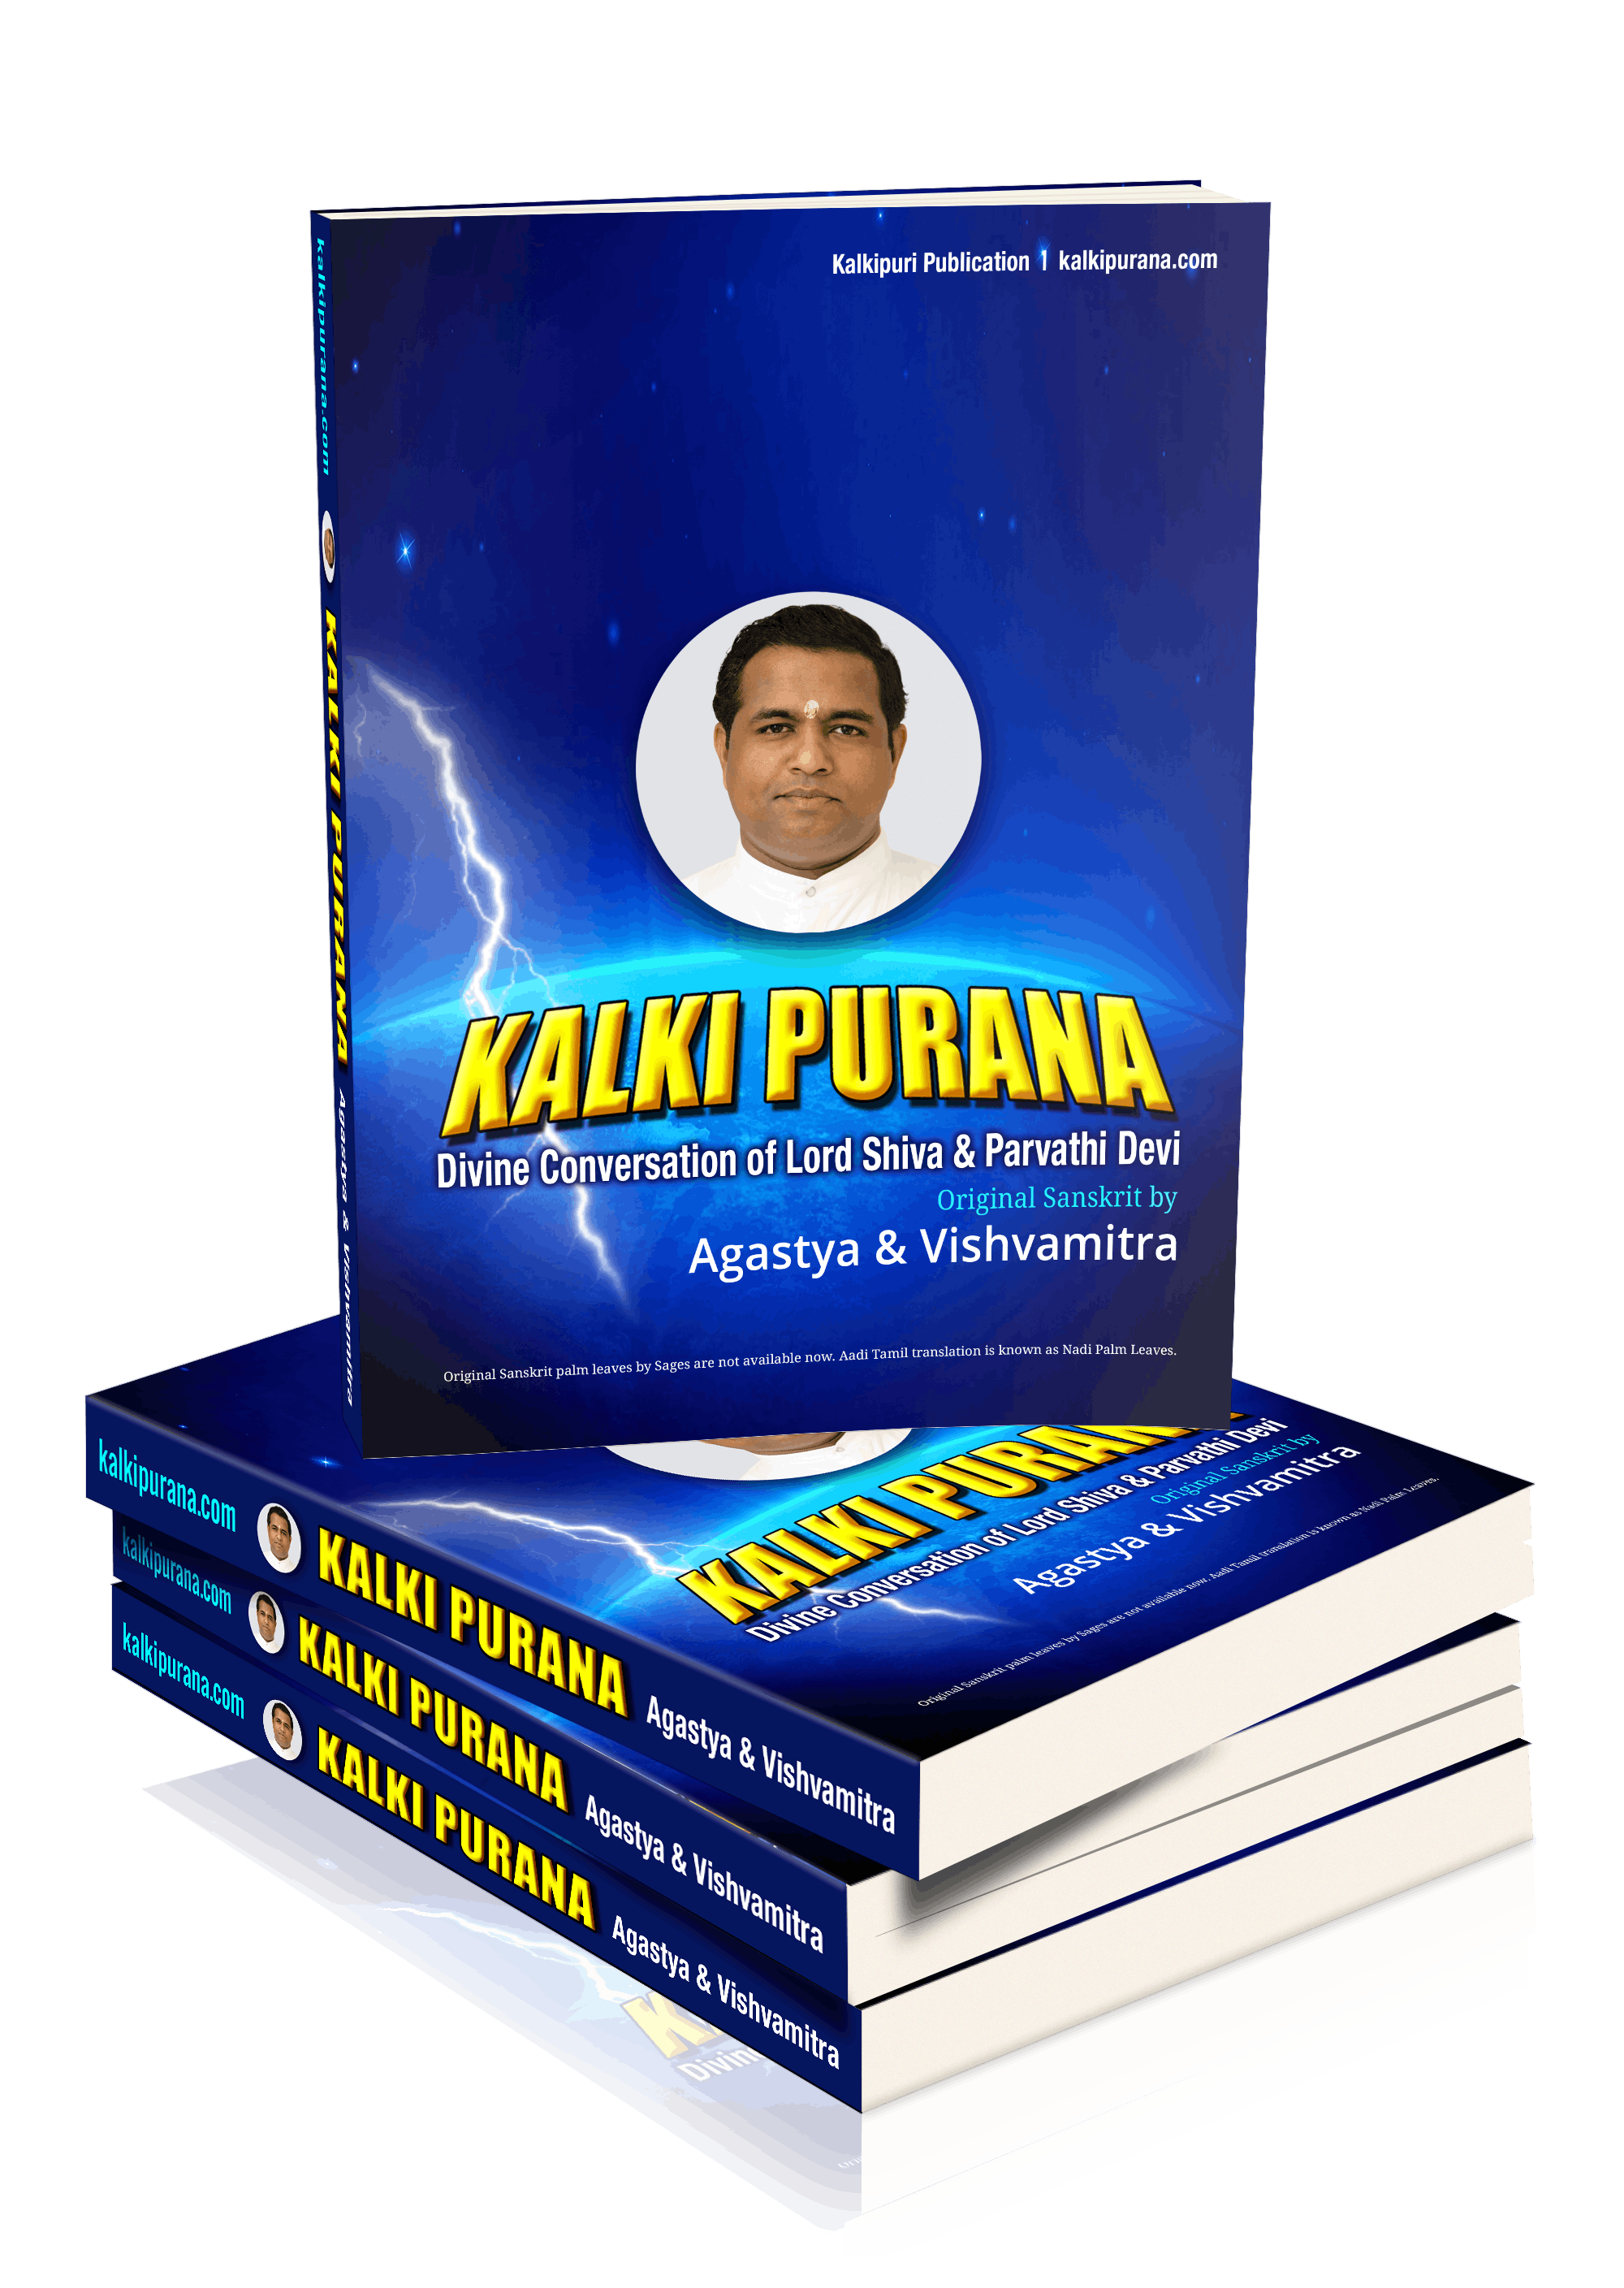 Kalki Purana Book by Sages Agastya and Vishvamitra